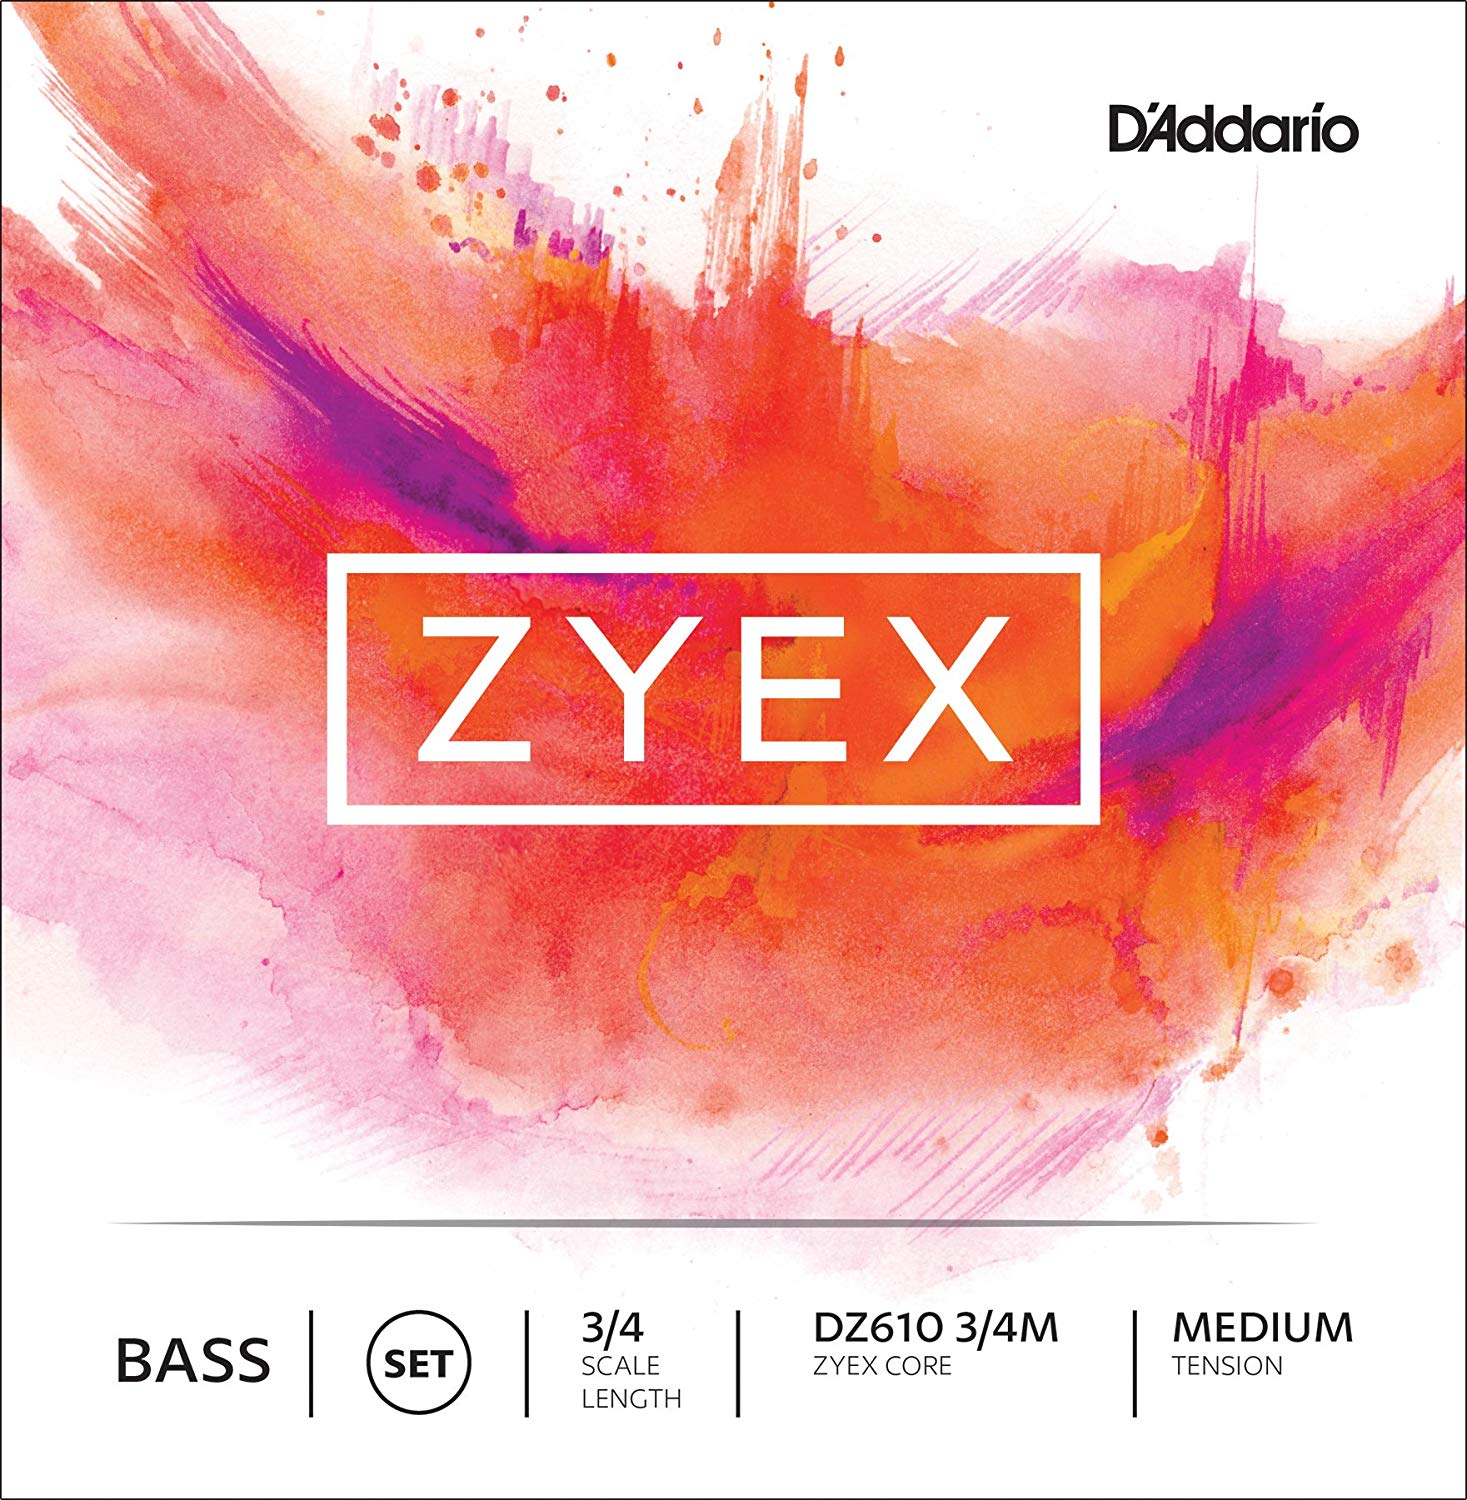 D'Addario Zyex Bass String Set in action